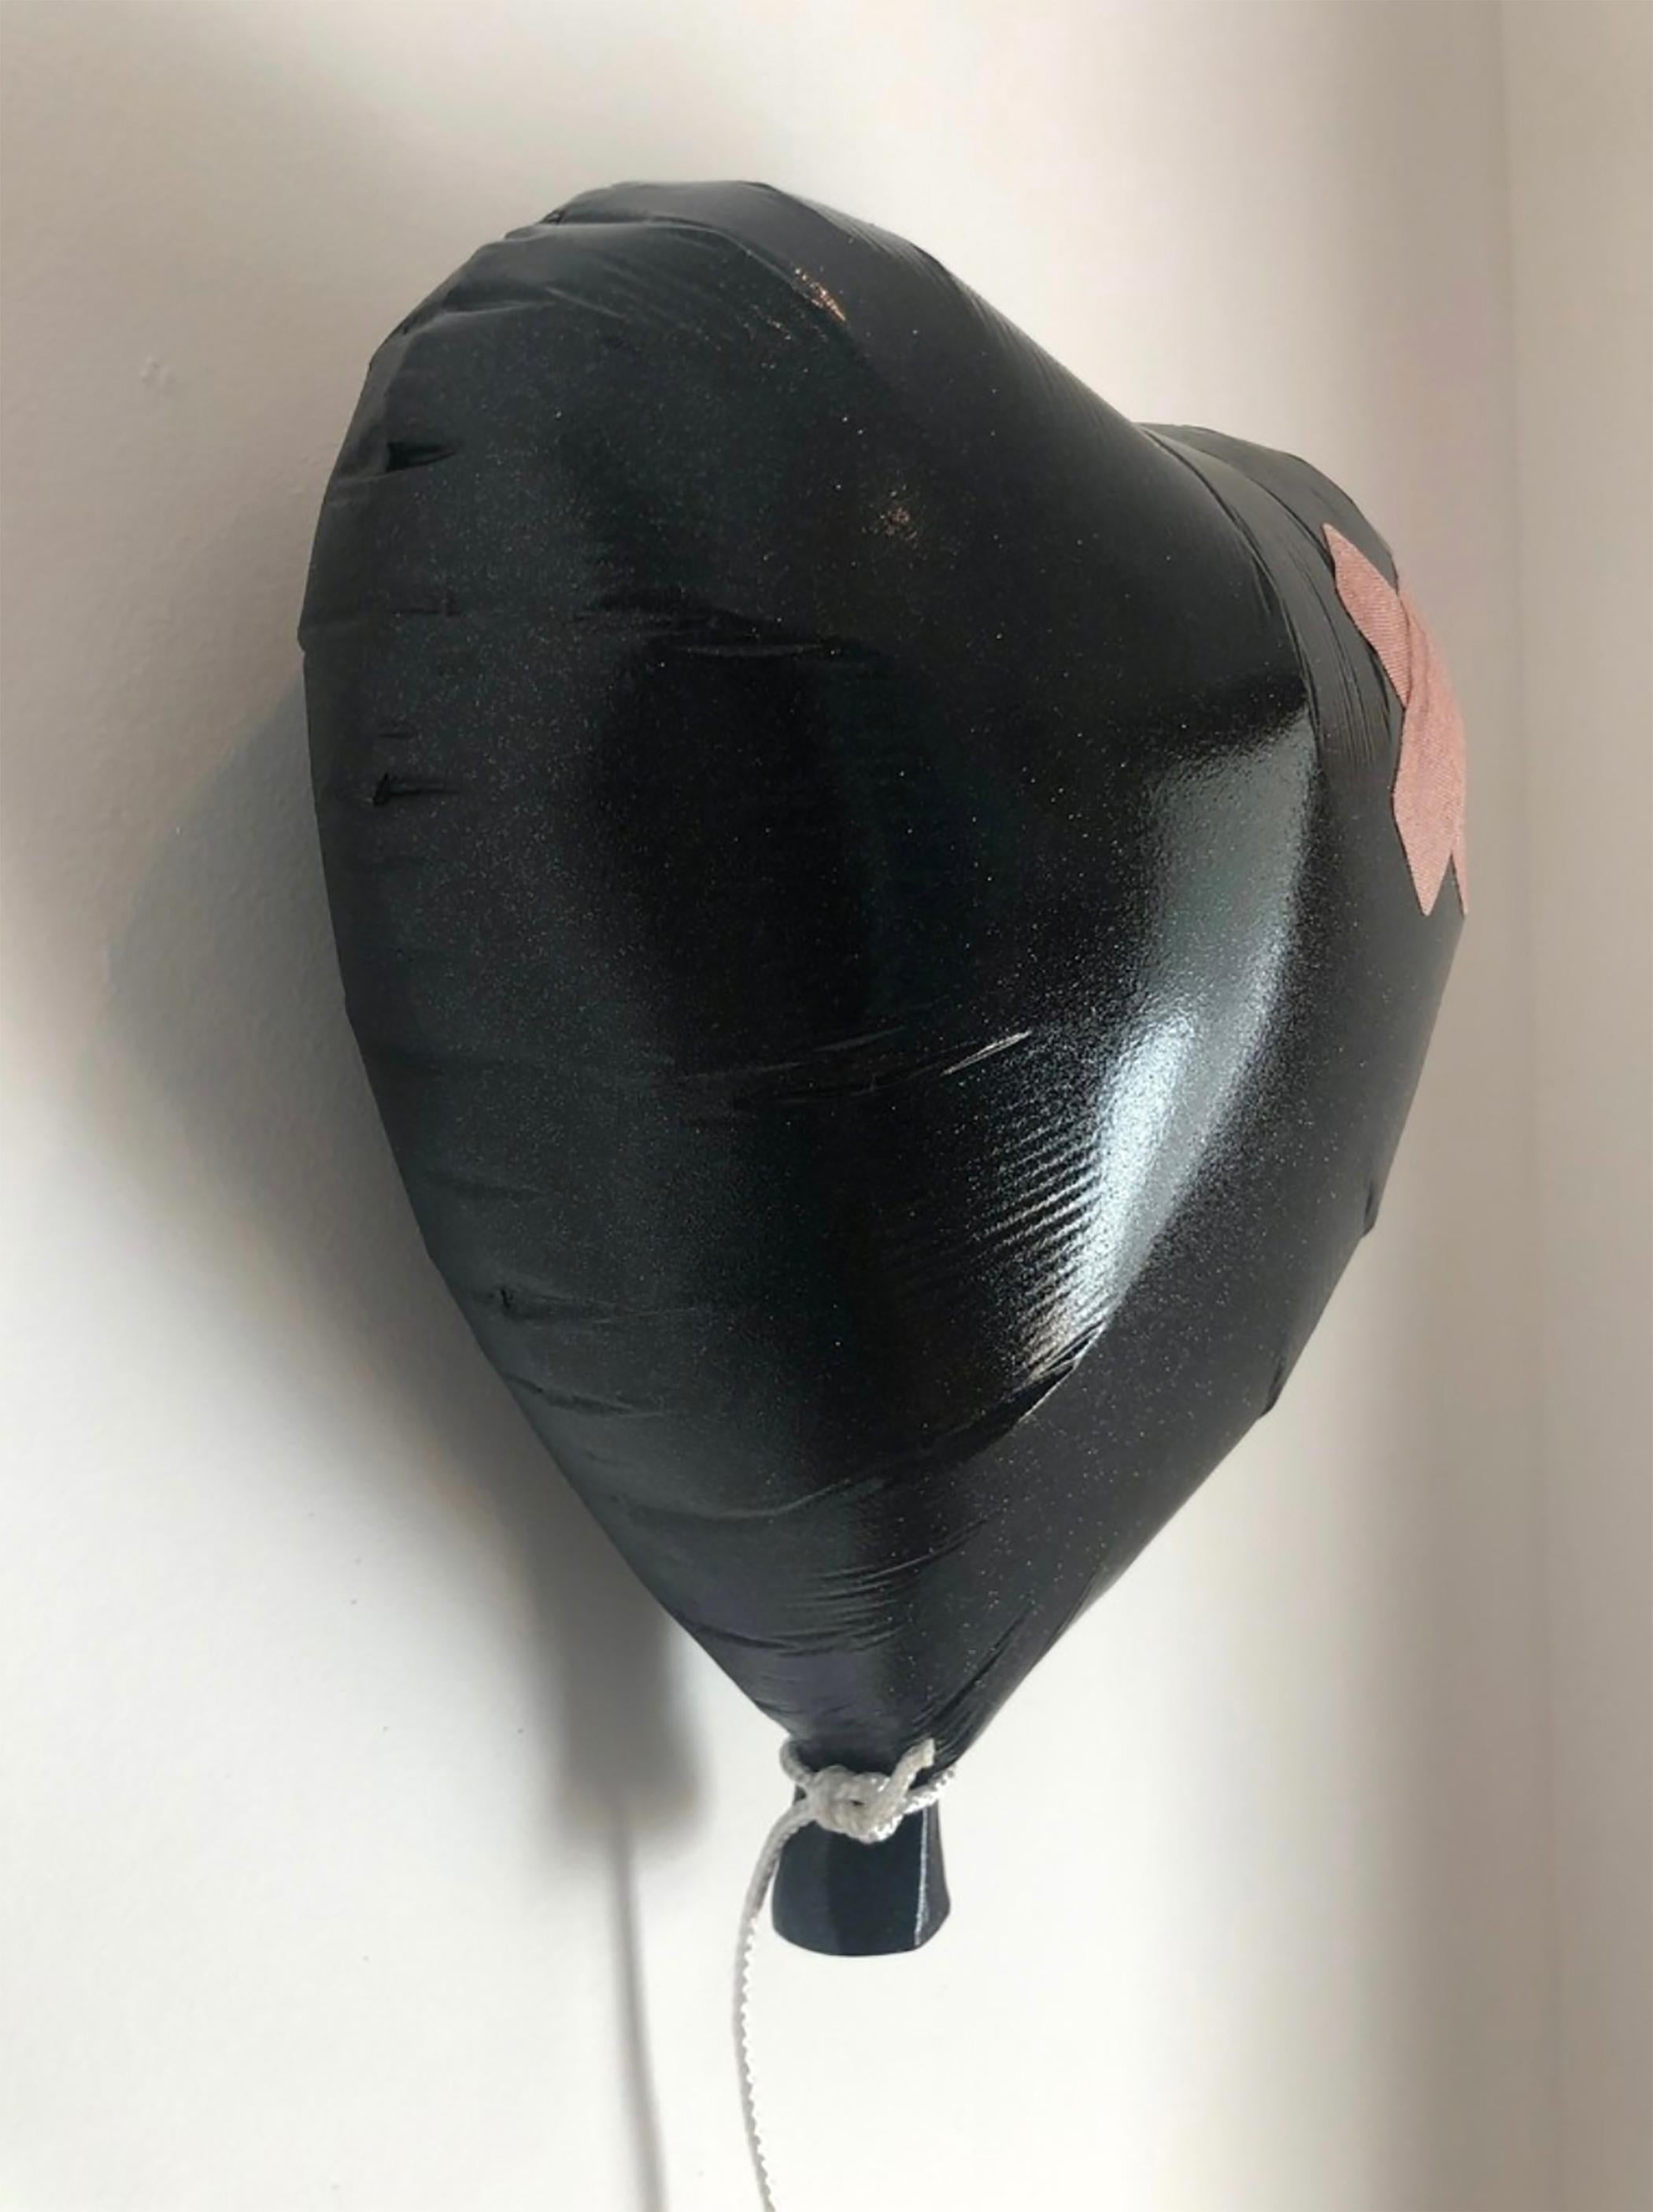 balloon jesus